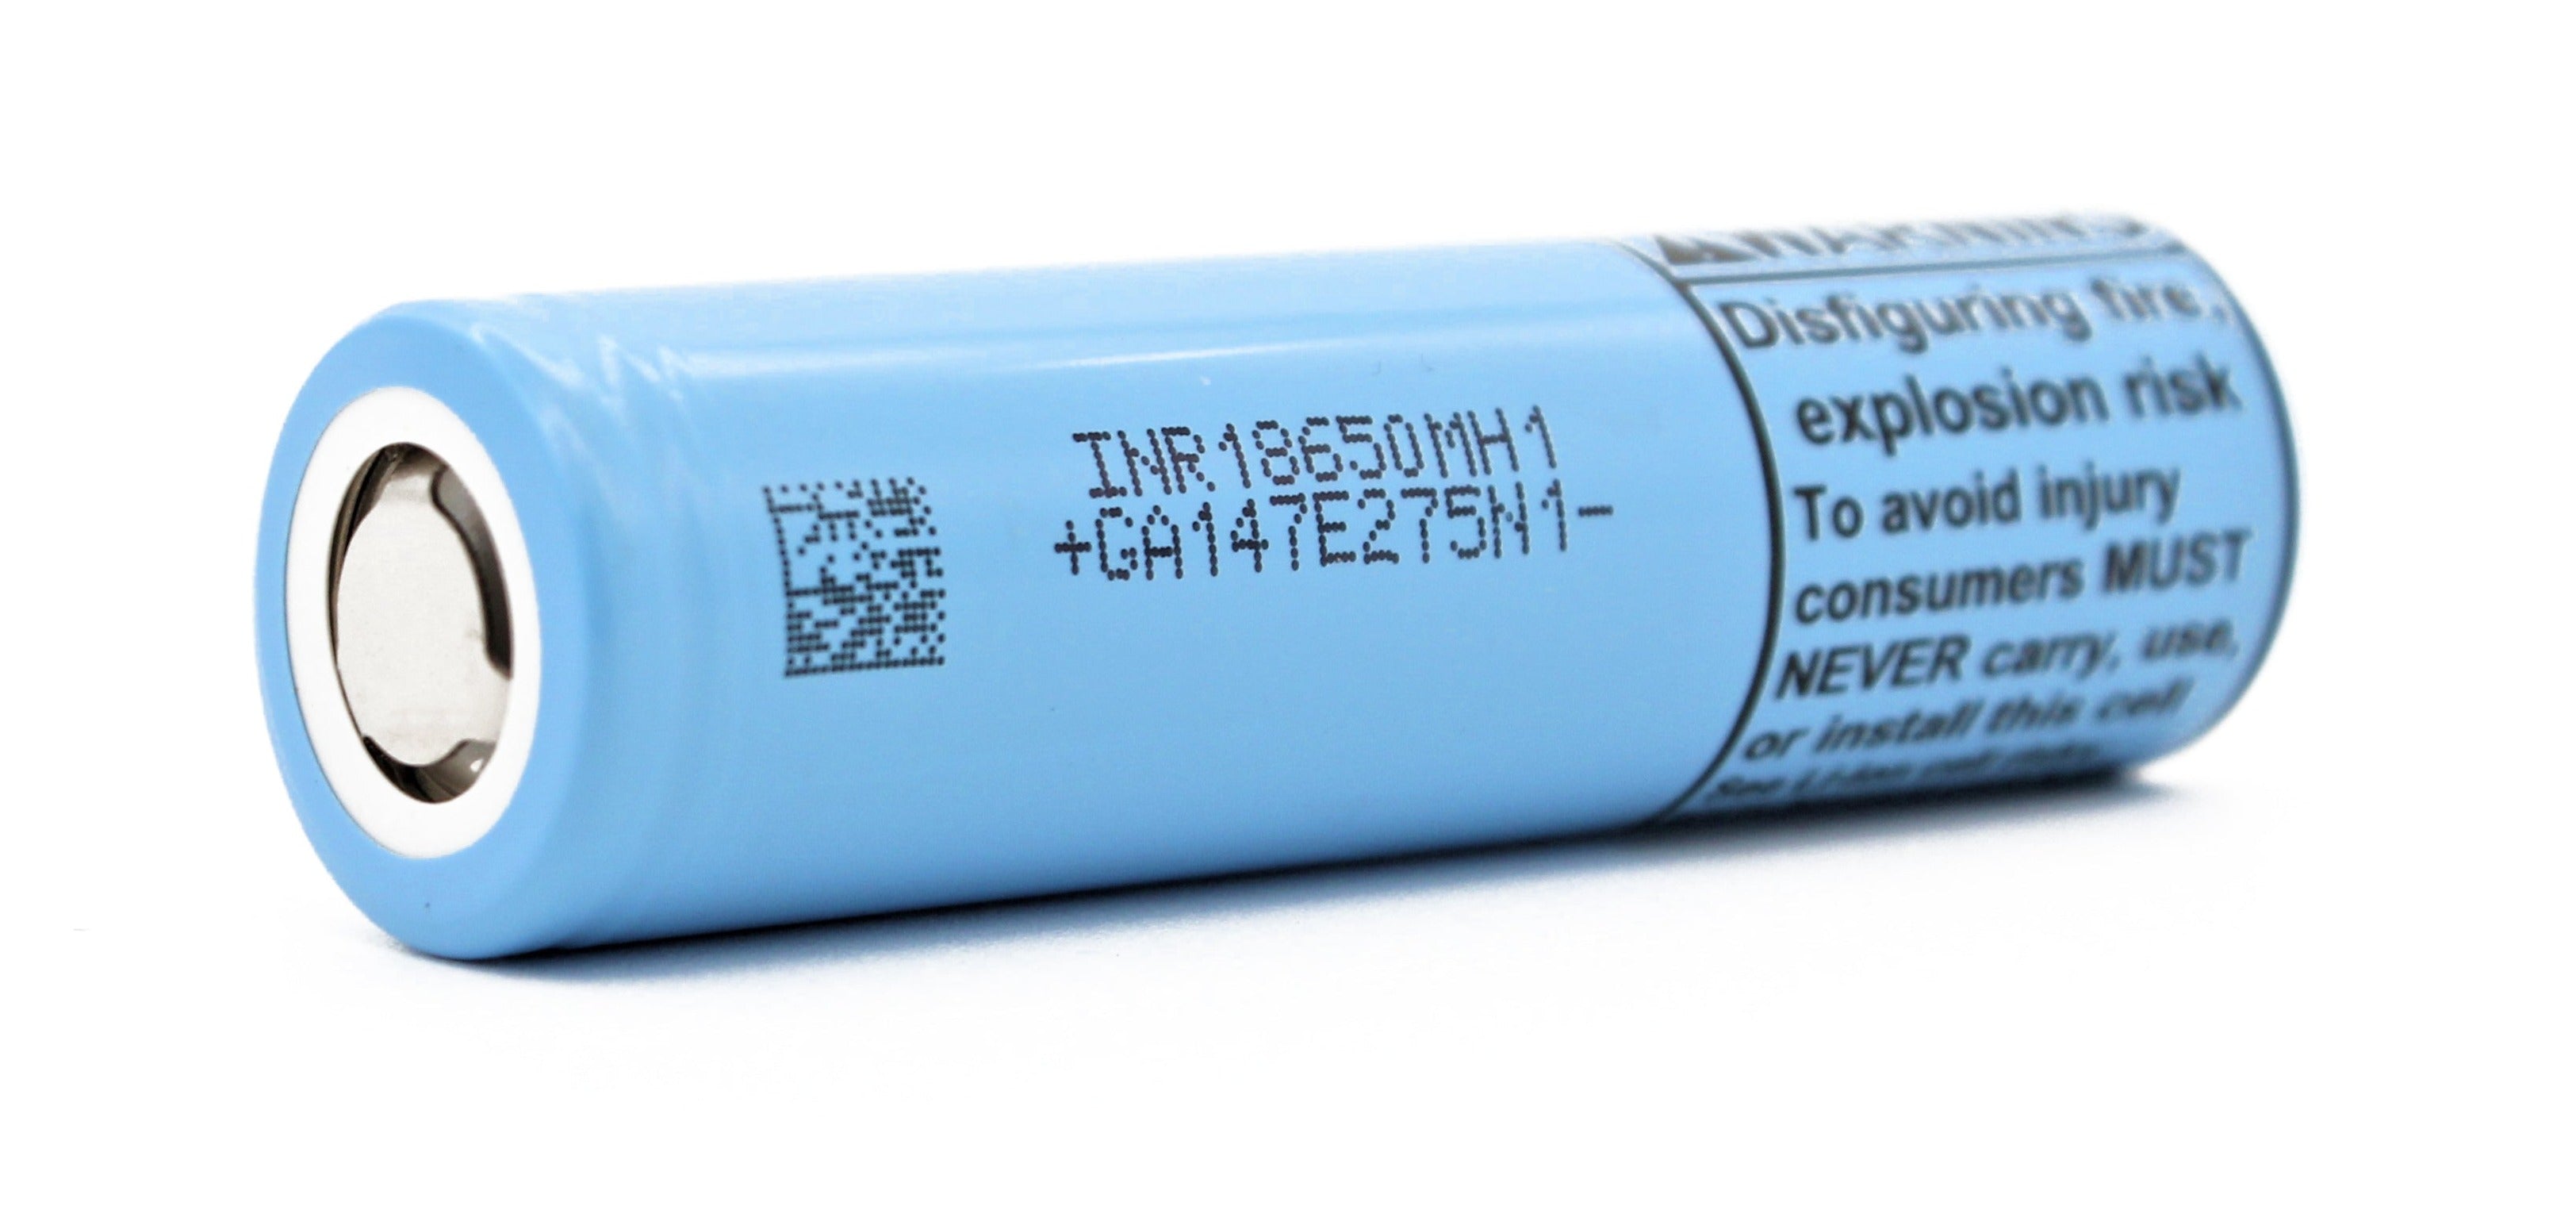 Batterie Lithium LG INR 18650 Batteries au Lithium rechargeable